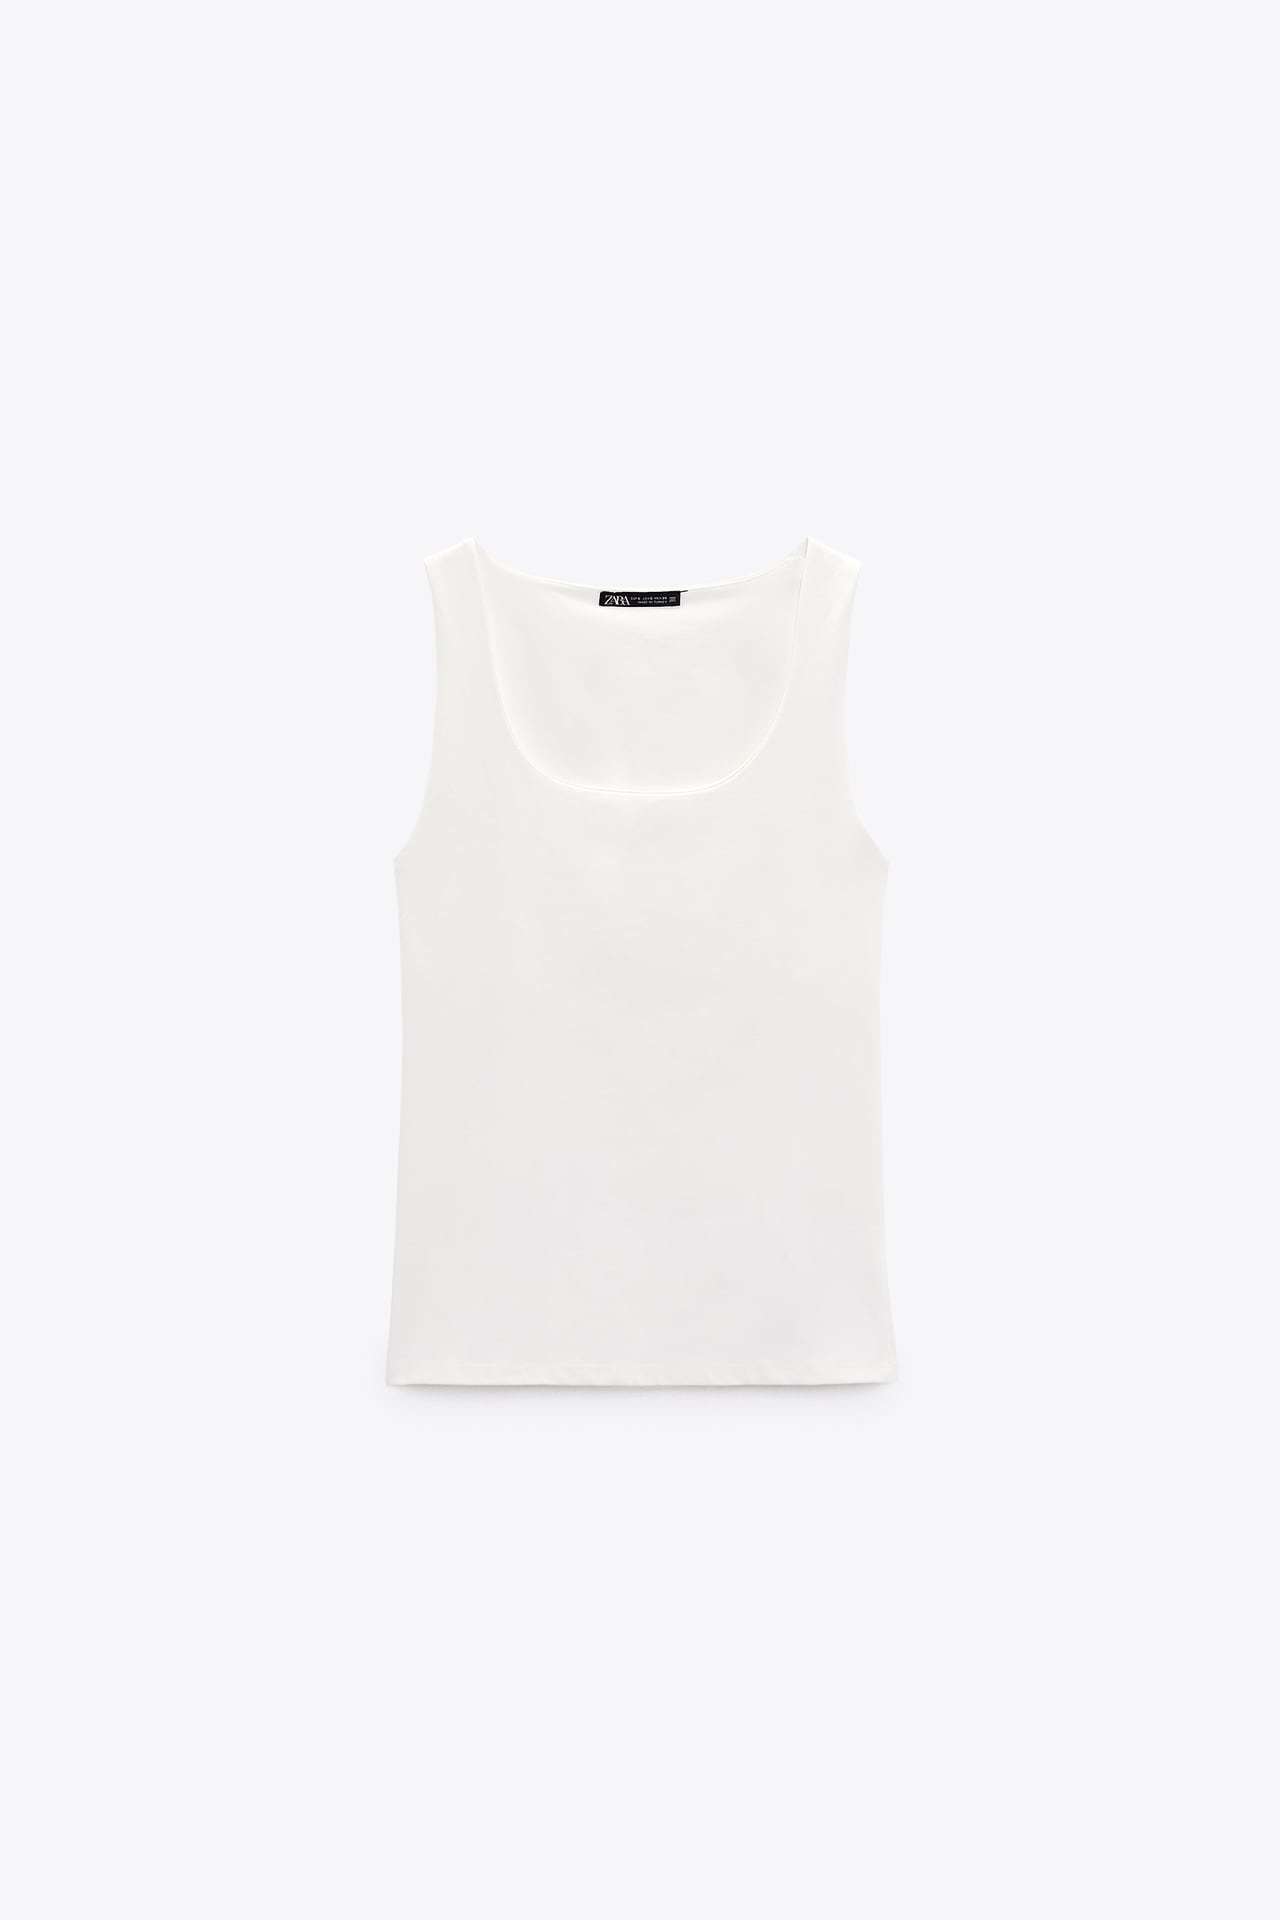 Camiseta básica de Zara (8,95 euros)